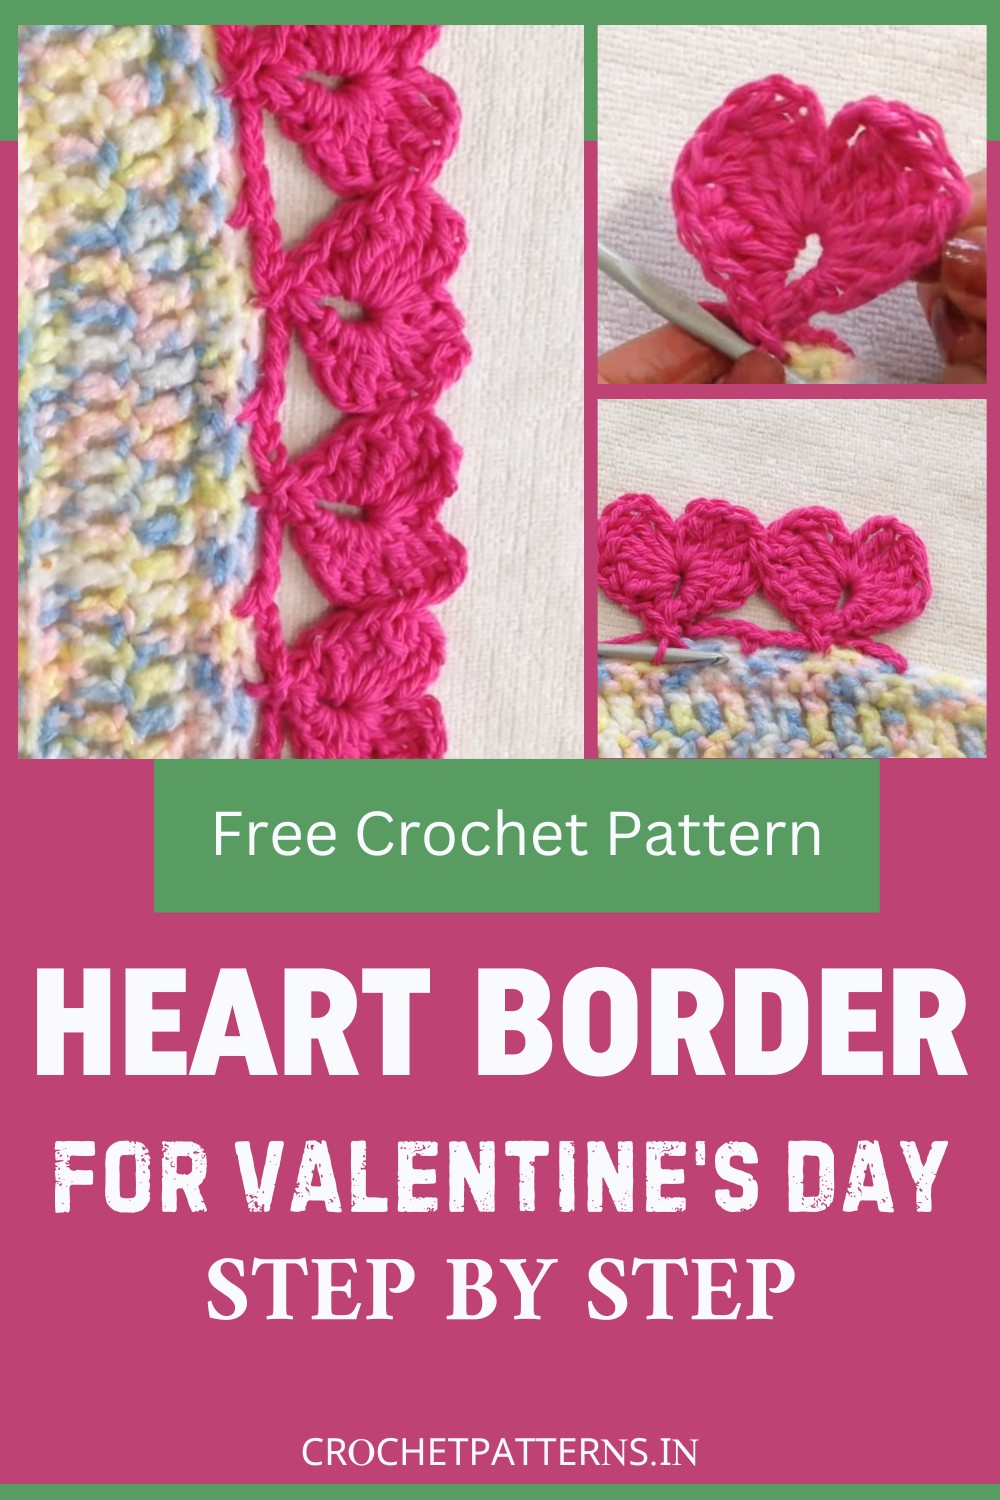 Crochet Heart Border For Valentine's Day